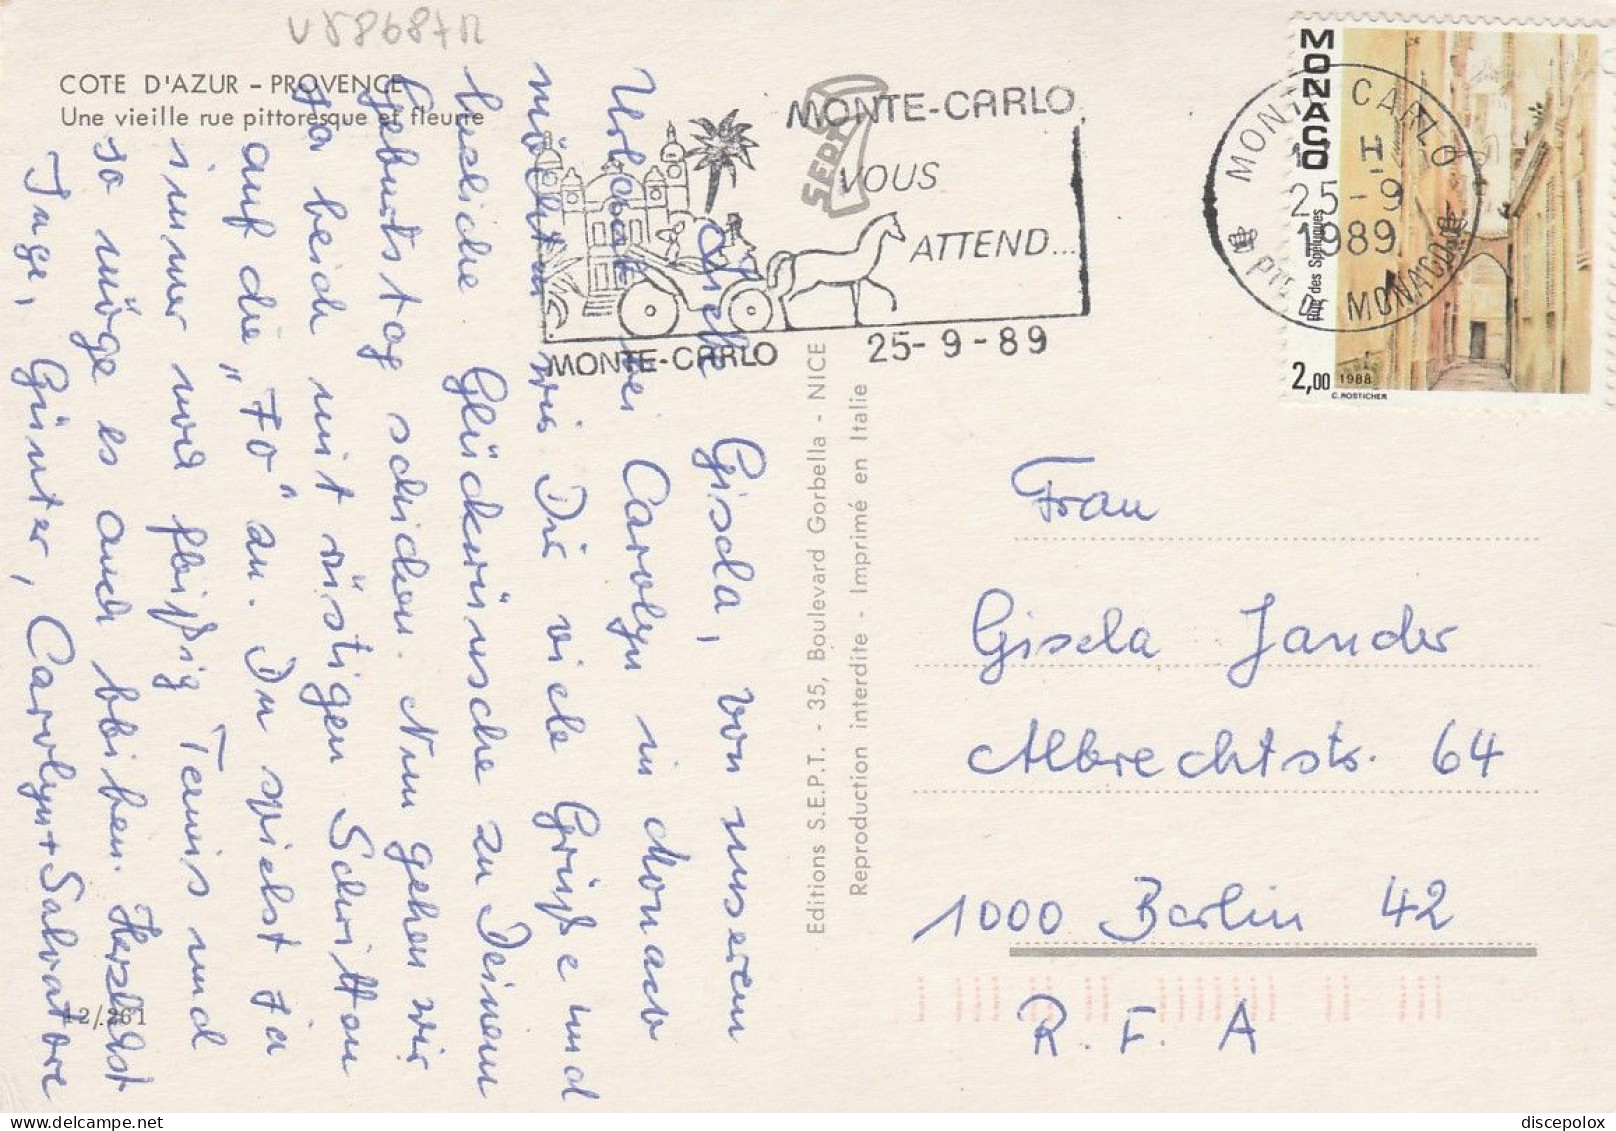 U5868 Monaco - 2 Francs Rue Des Spelugues - Nice Stamps Timbres Francobolli / Viaggiata 1989 - Briefe U. Dokumente